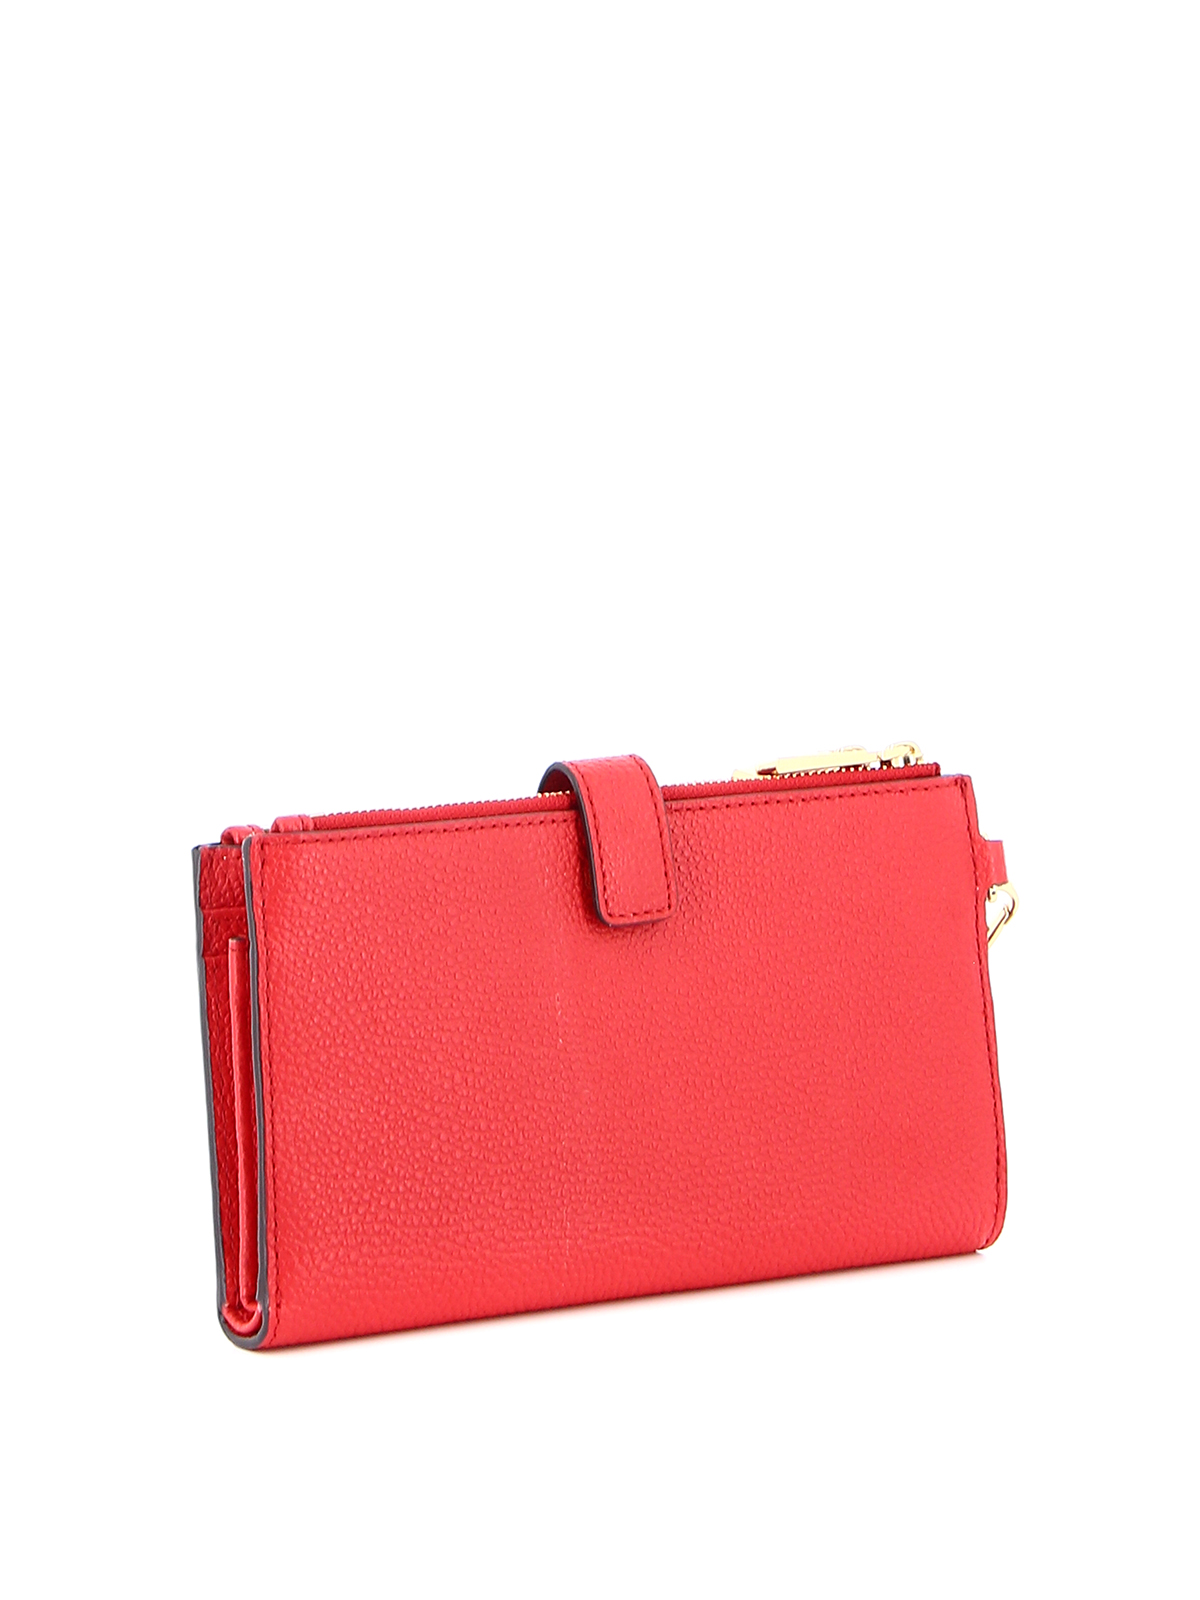 Wallets & purses Michael Kors - Jet Set leather double zip wallet -  34F9GAFW4L683